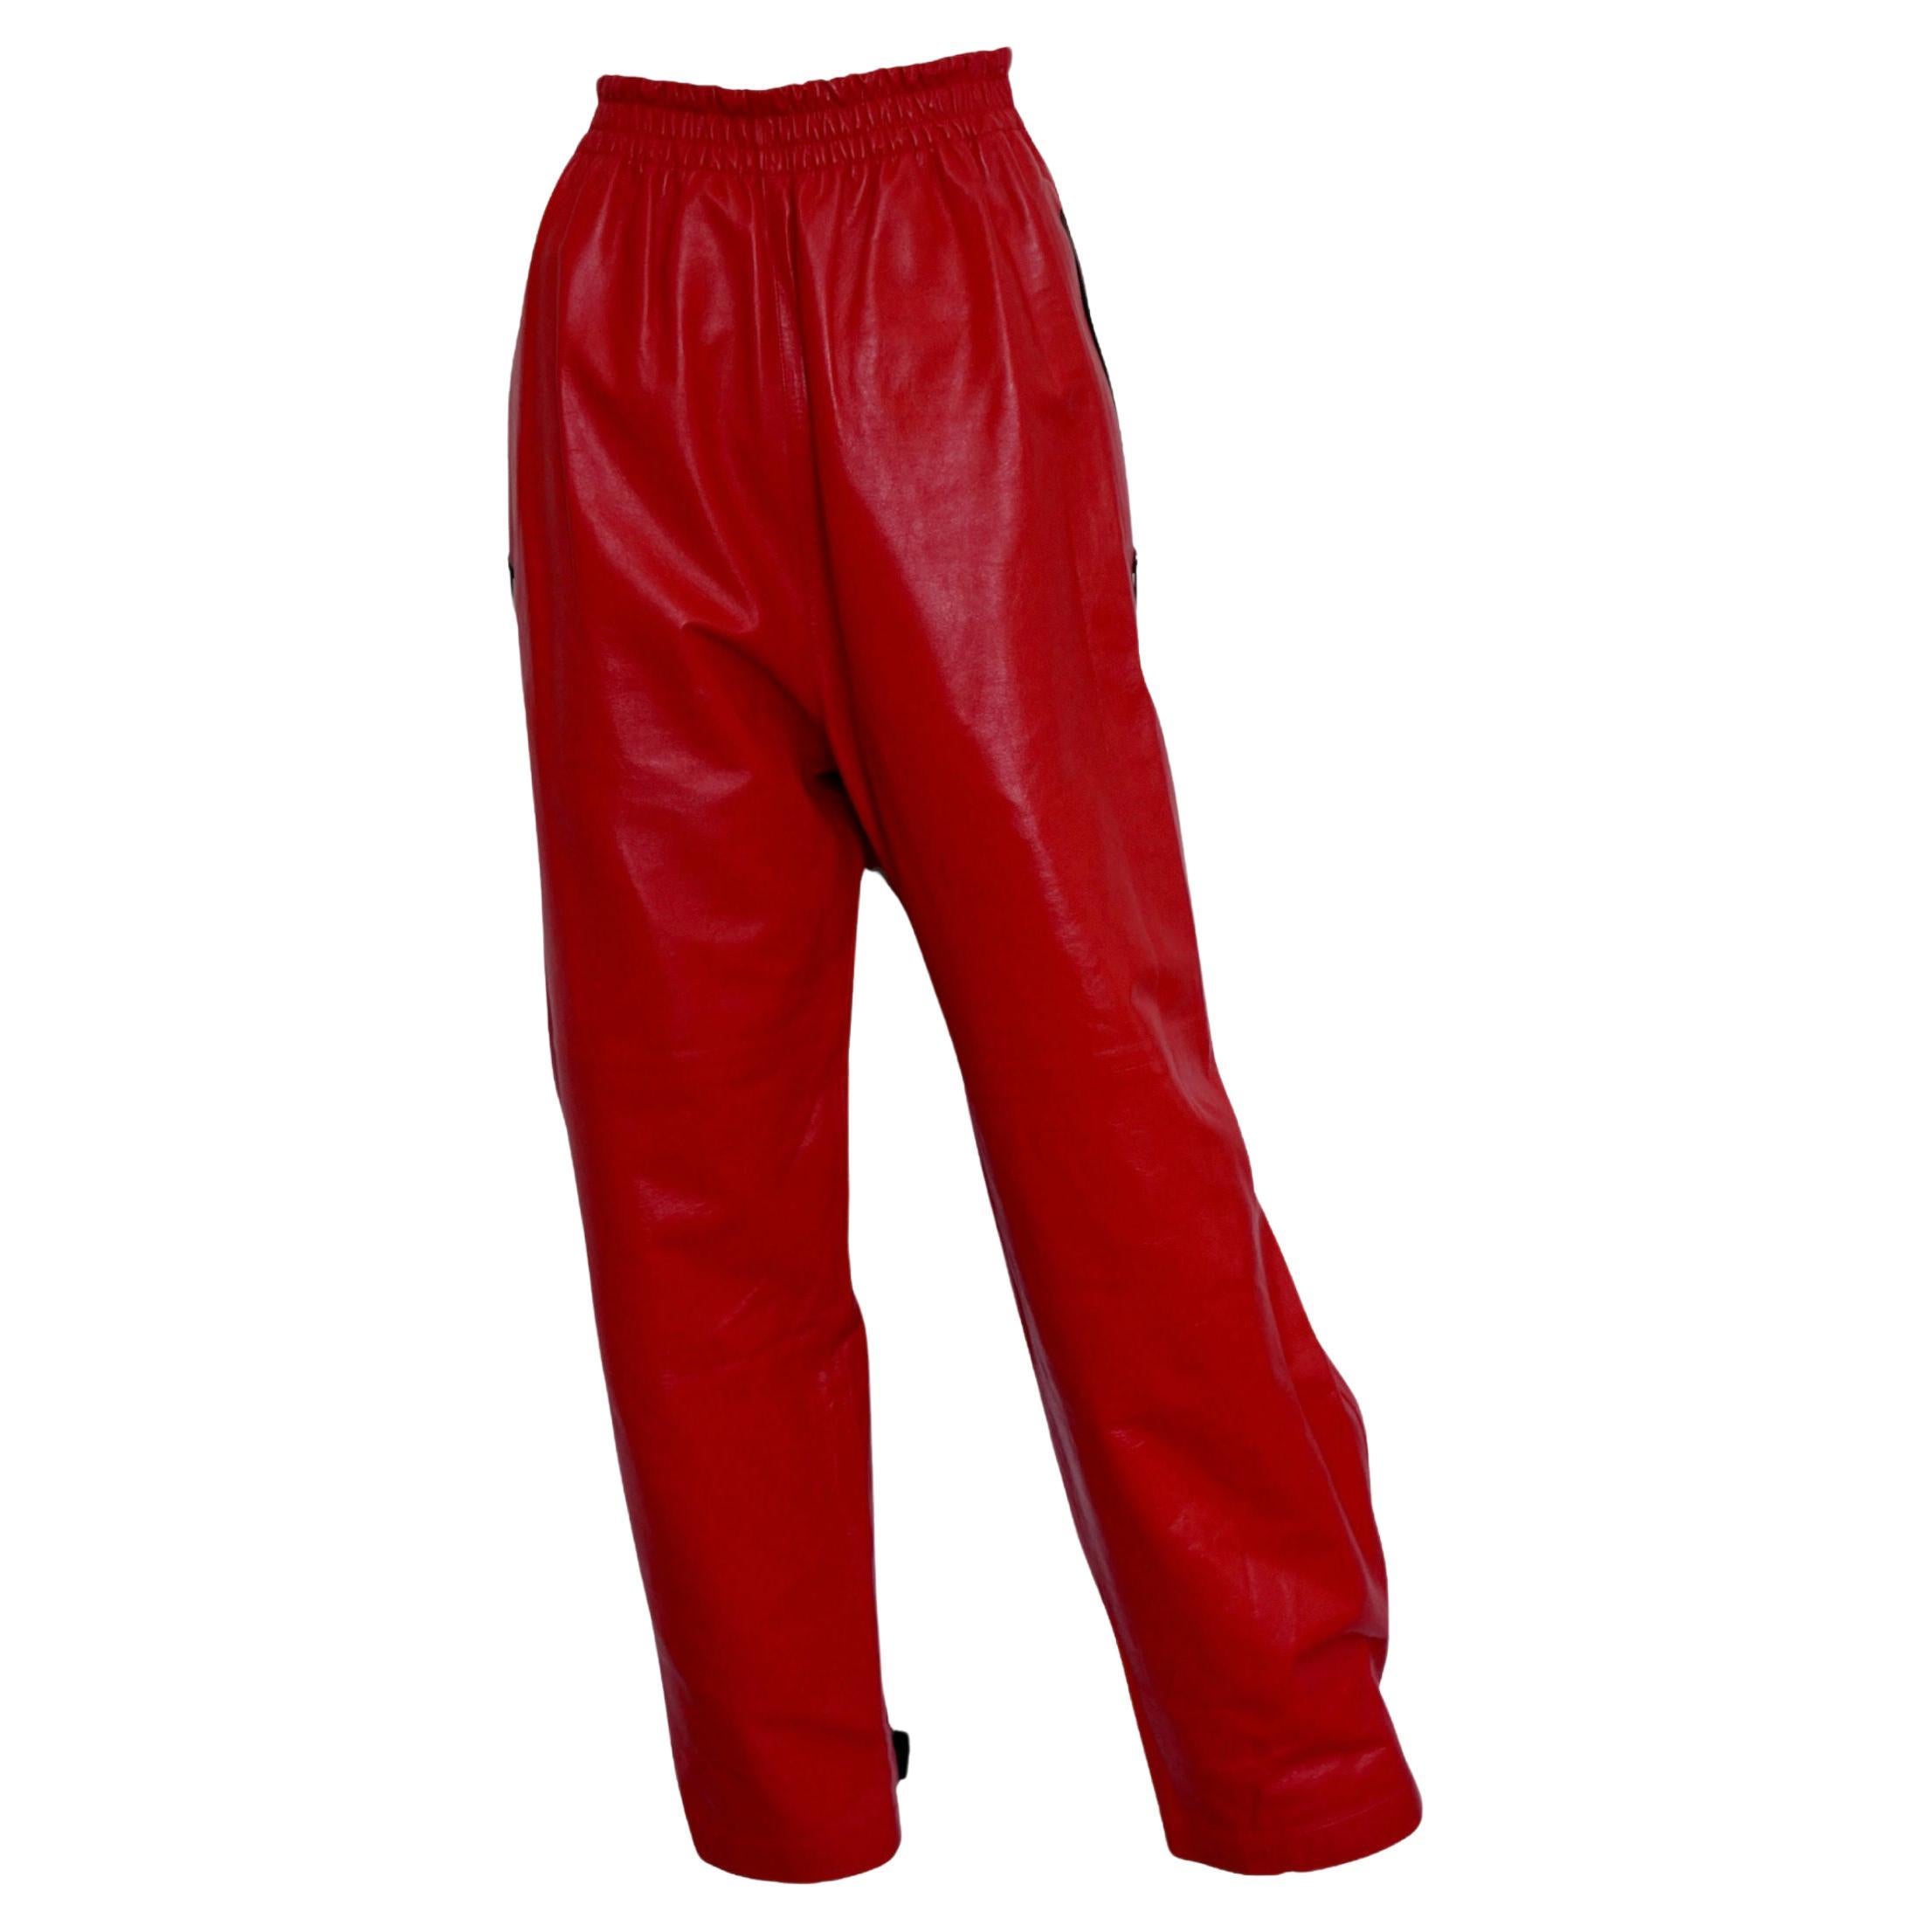 Bottega Veneta Red Leather Pants, Size S